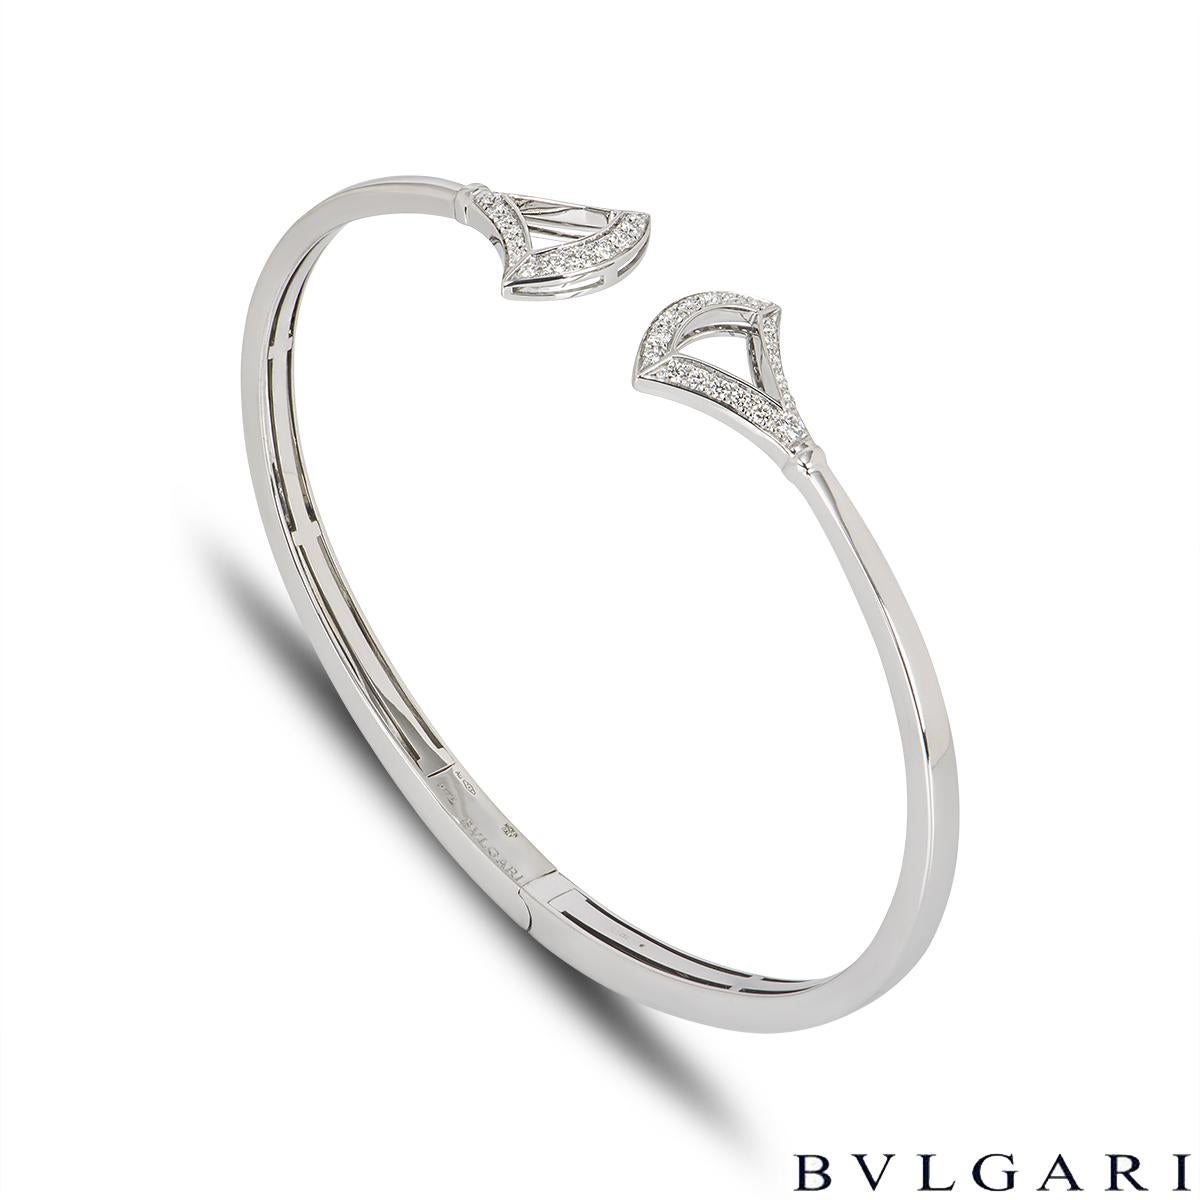 Ein elegantes Diamantarmband aus 18 Karat Weißgold von Bvlgari aus der Kollektion Divas' Dream. Das Armband im Manschettenstil hat ein fächerförmiges Motiv mit 18 runden Diamanten im Brillantschliff an beiden Enden, insgesamt ca. 0,42ct. Das Armband